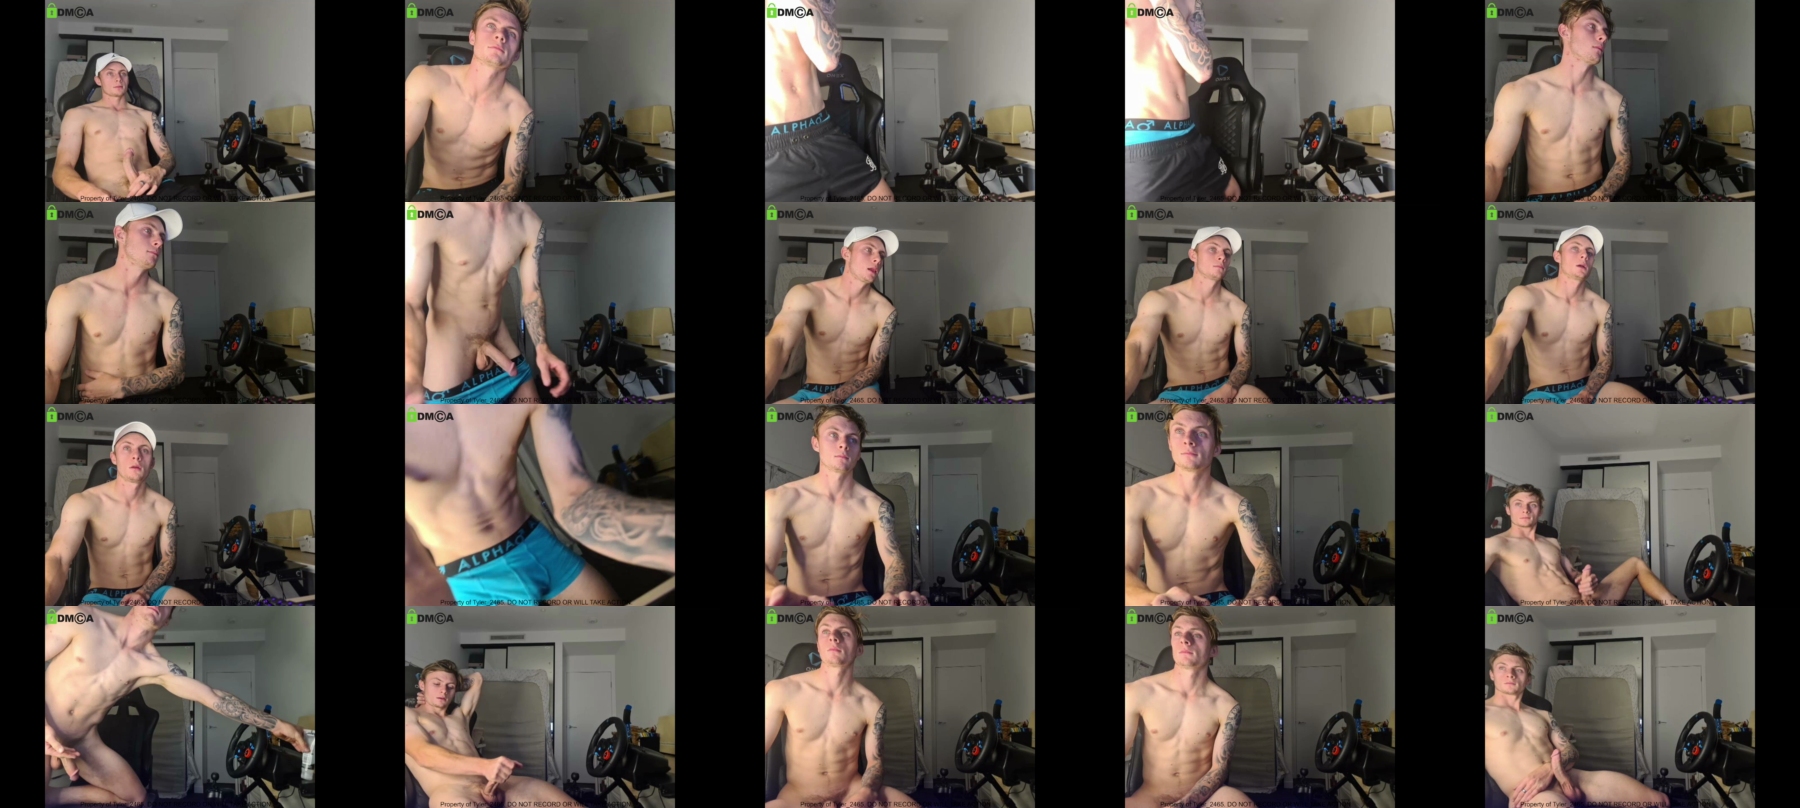 Tyler_2465  04-11-2021 Male Naked